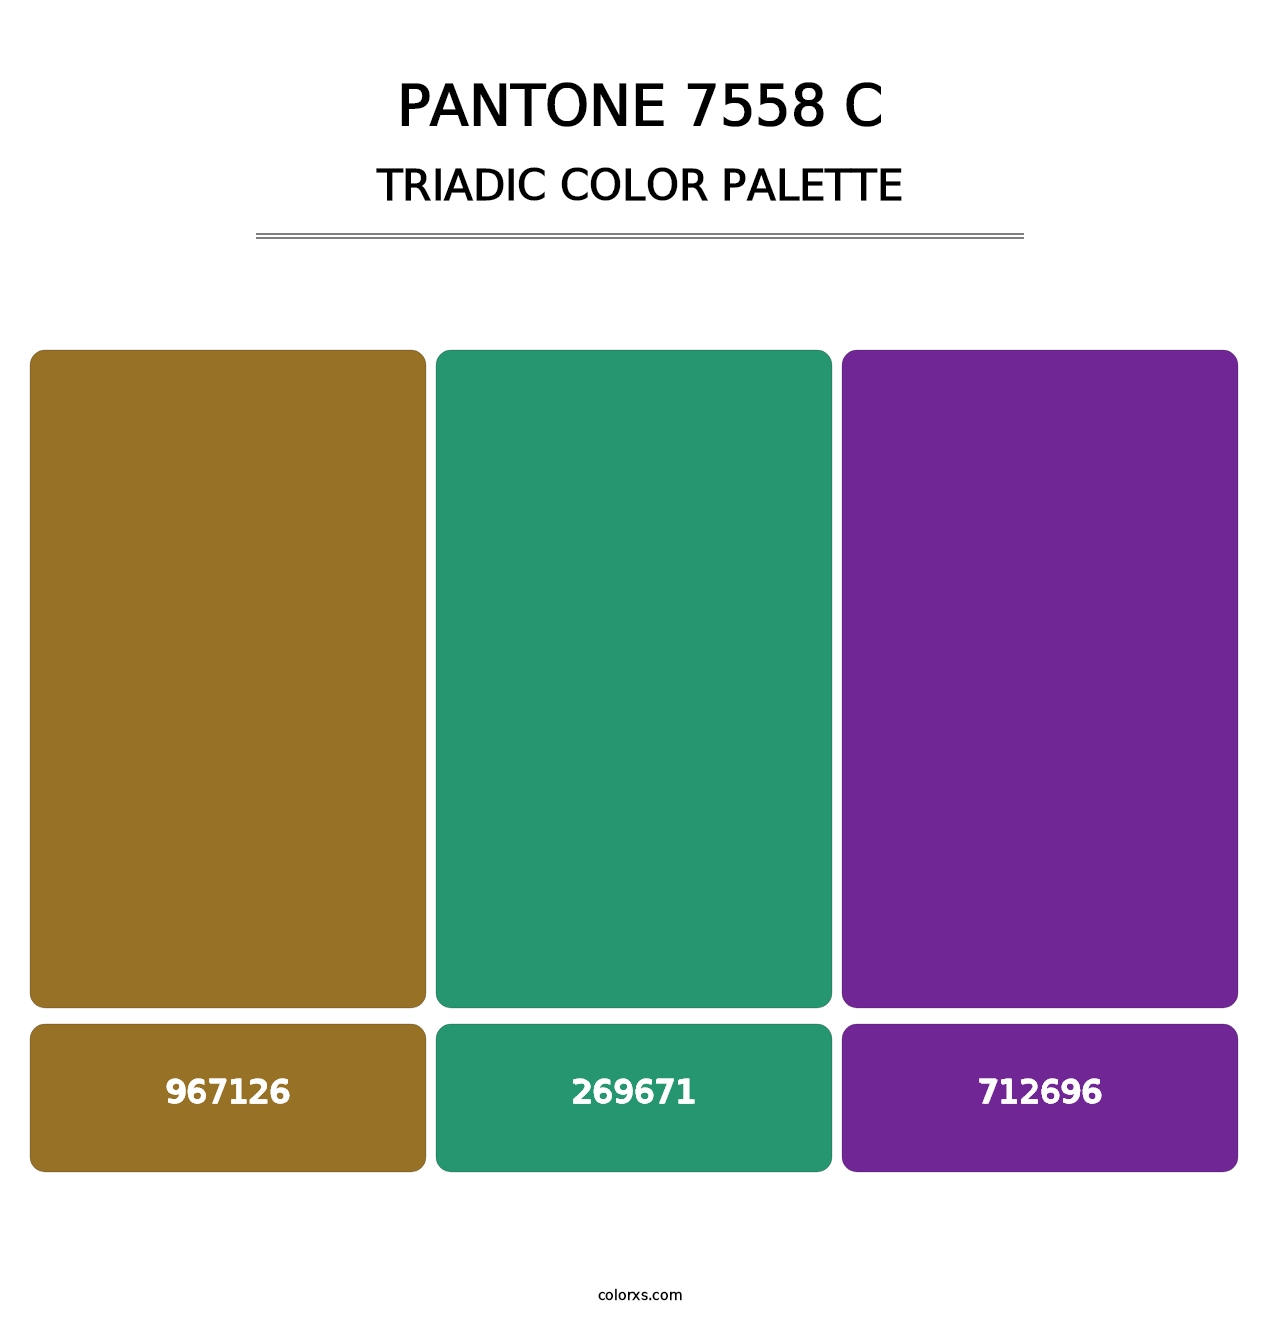 PANTONE 7558 C - Triadic Color Palette